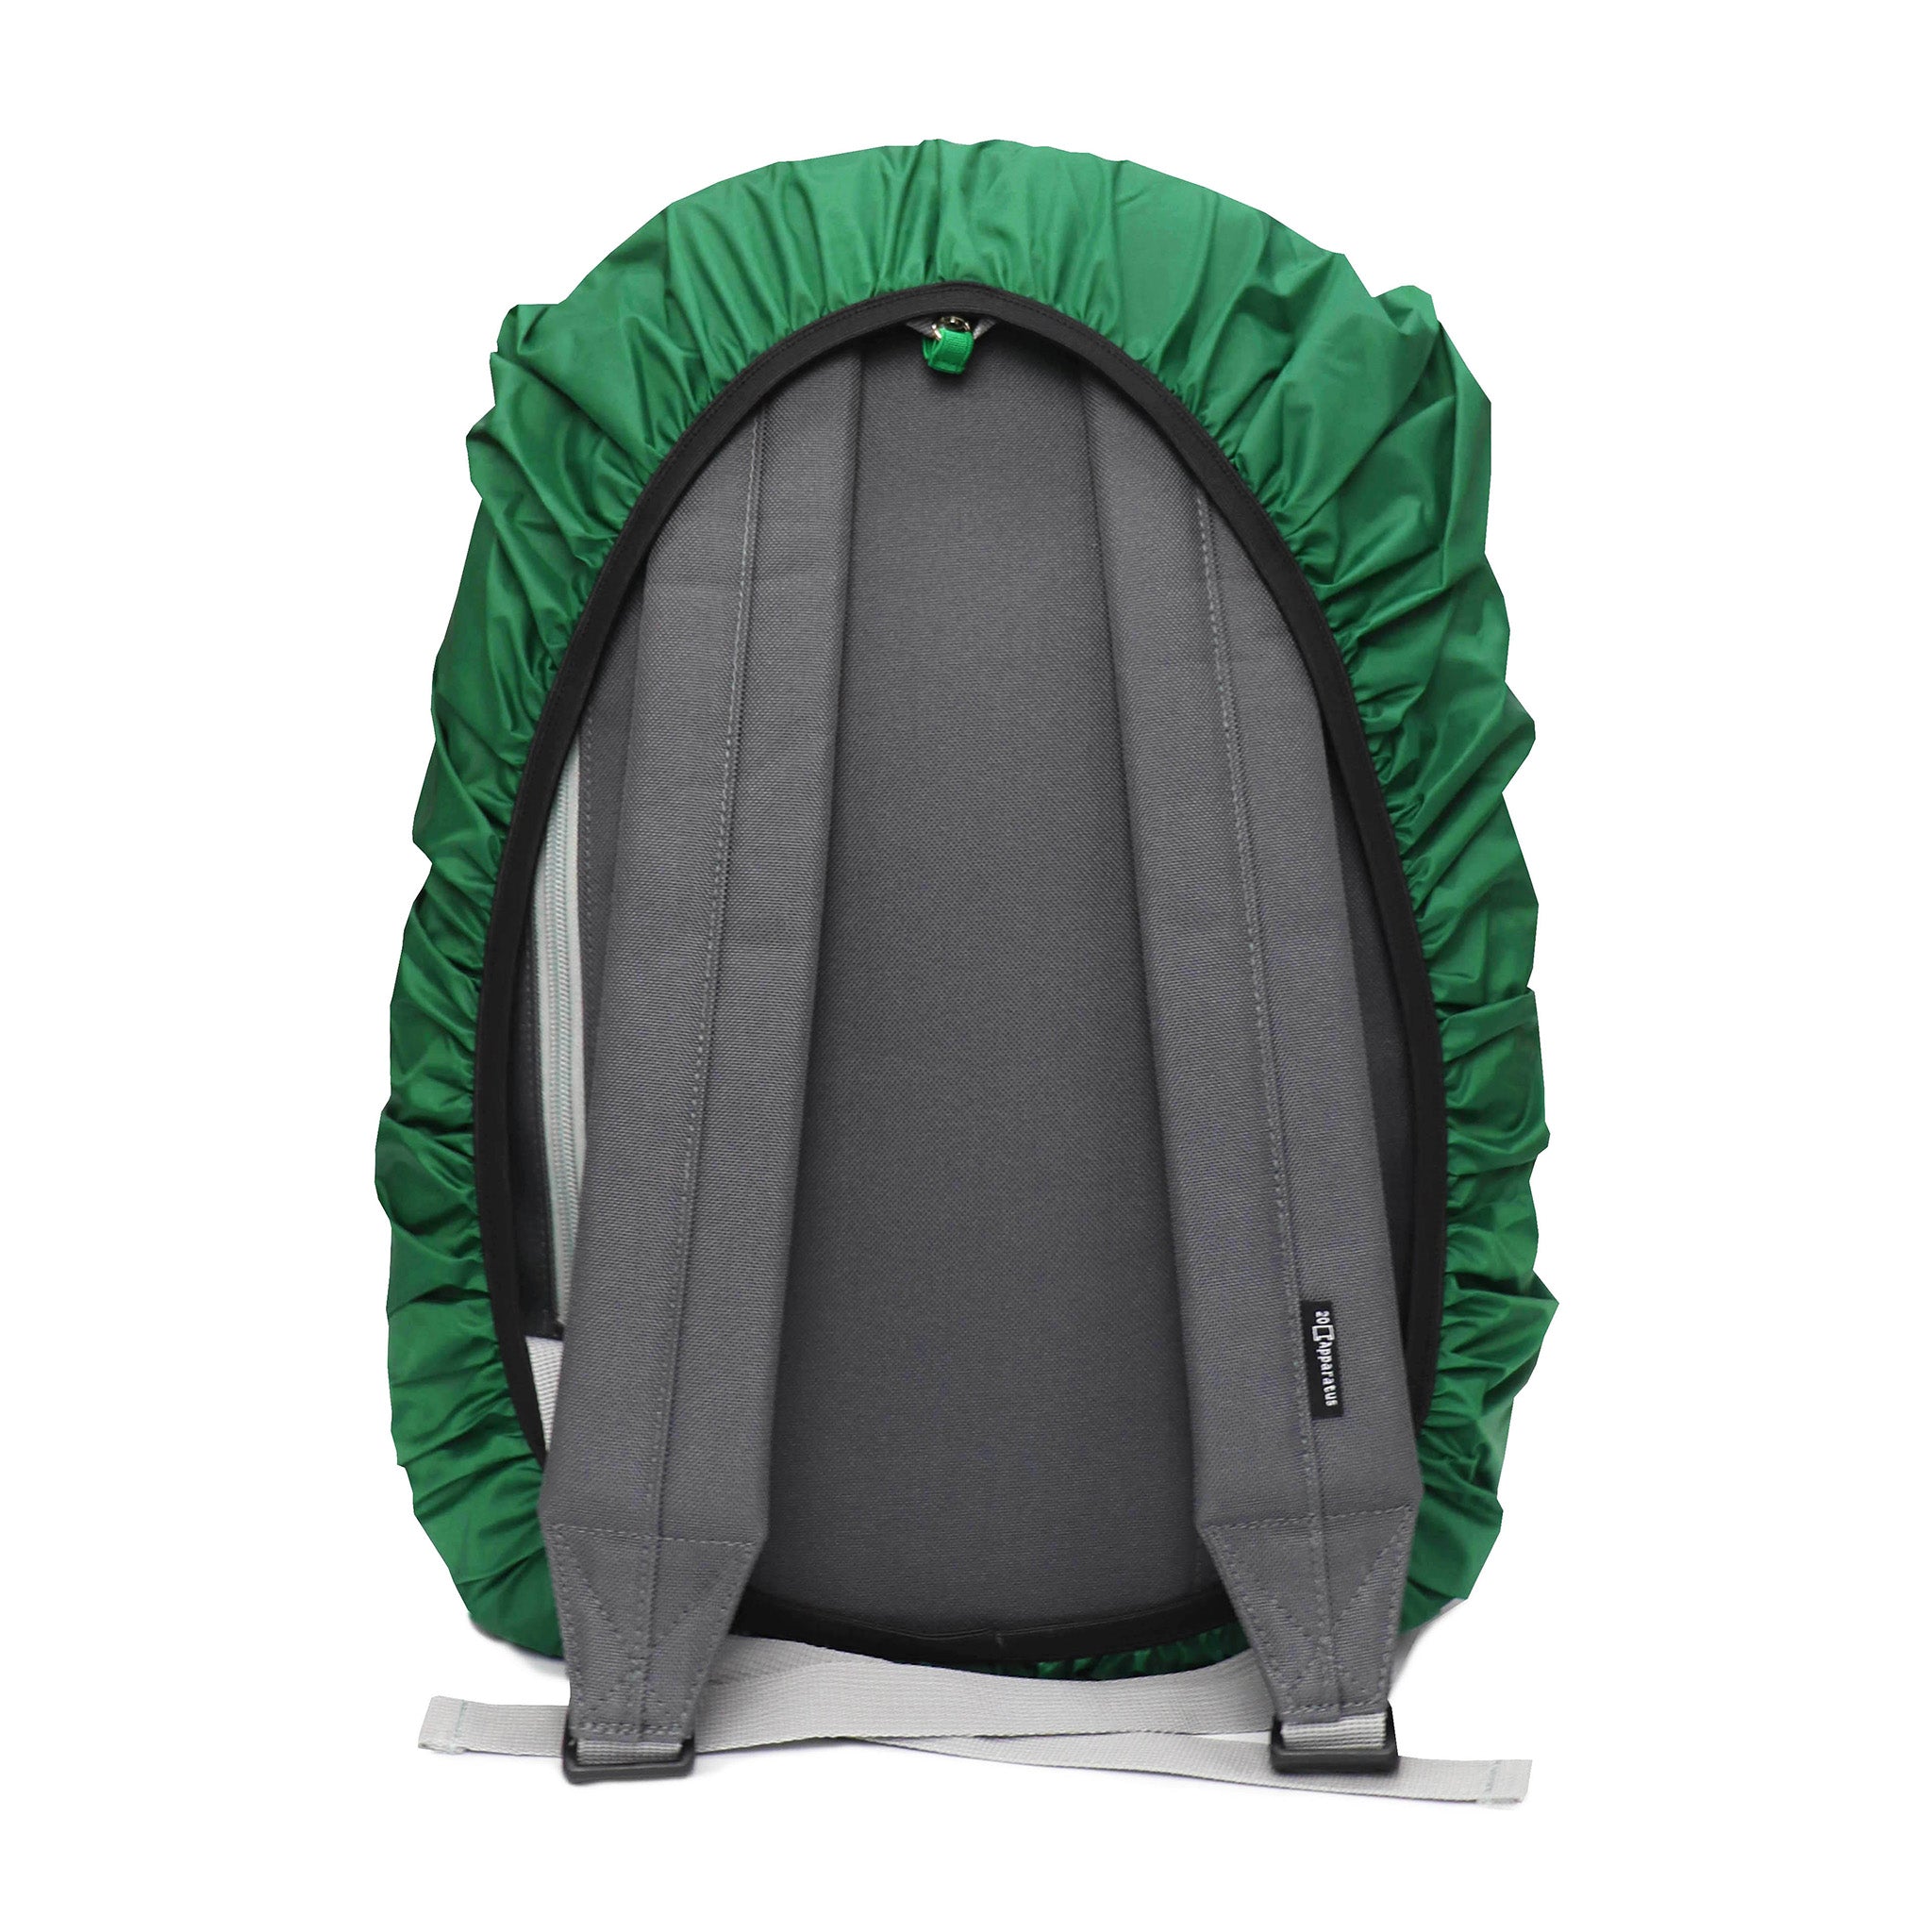 Backpack Raincover